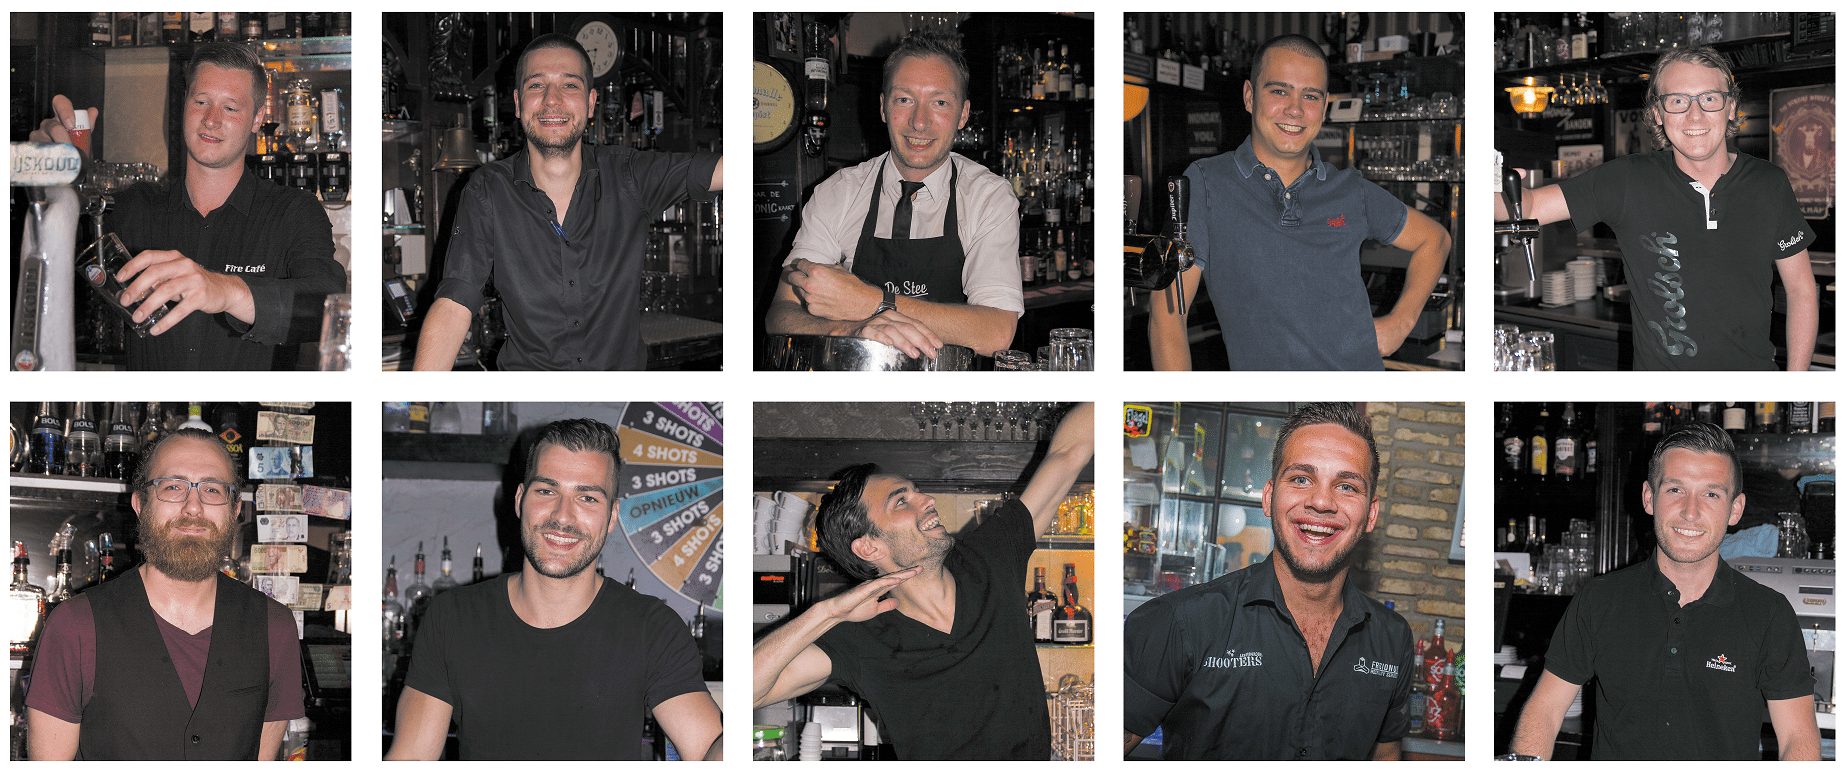 Photo of Wie wordt de Lekkerste Barman van Leeuwarden?